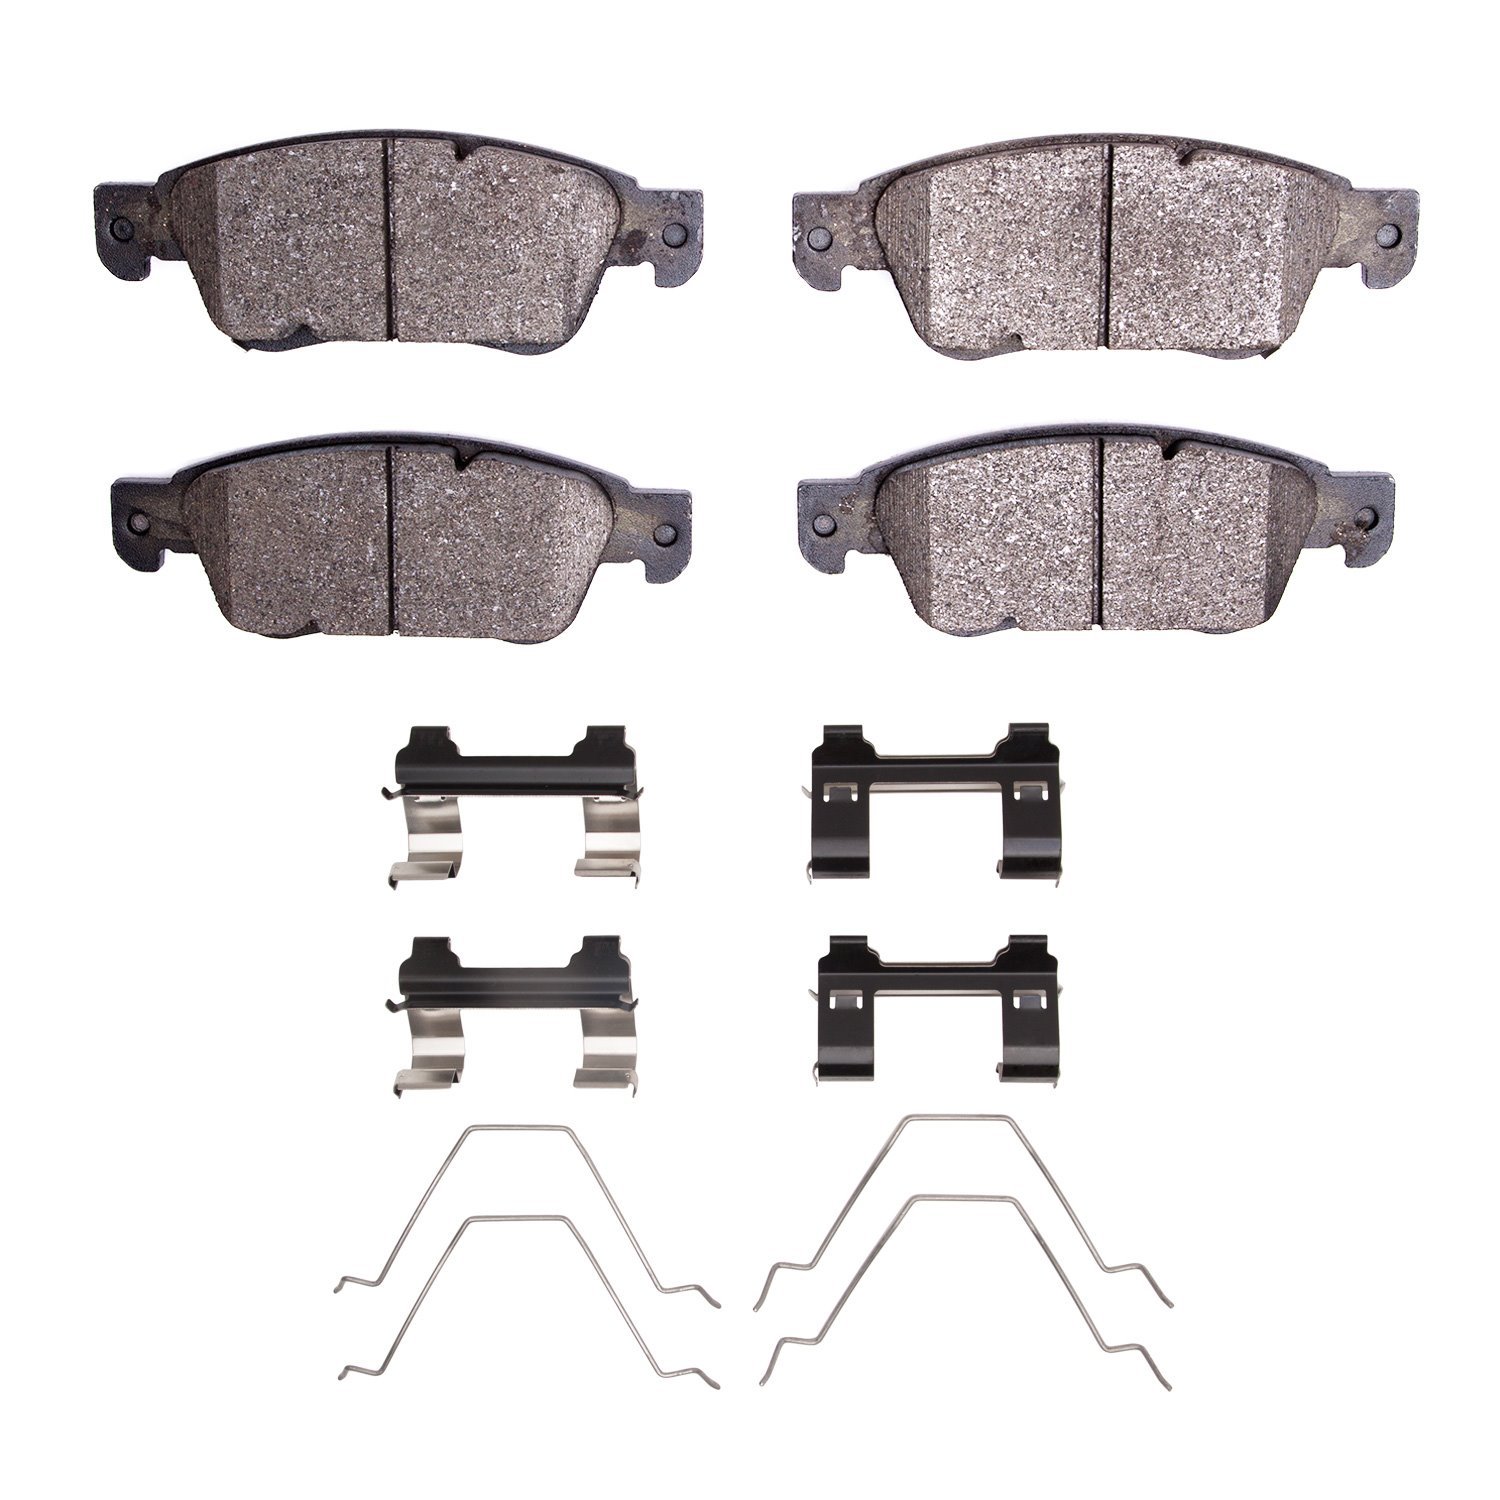 Euro Ceramic Brake Pads & Hardware Kit, 2007-2015 Infiniti/Nissan, Position: Front